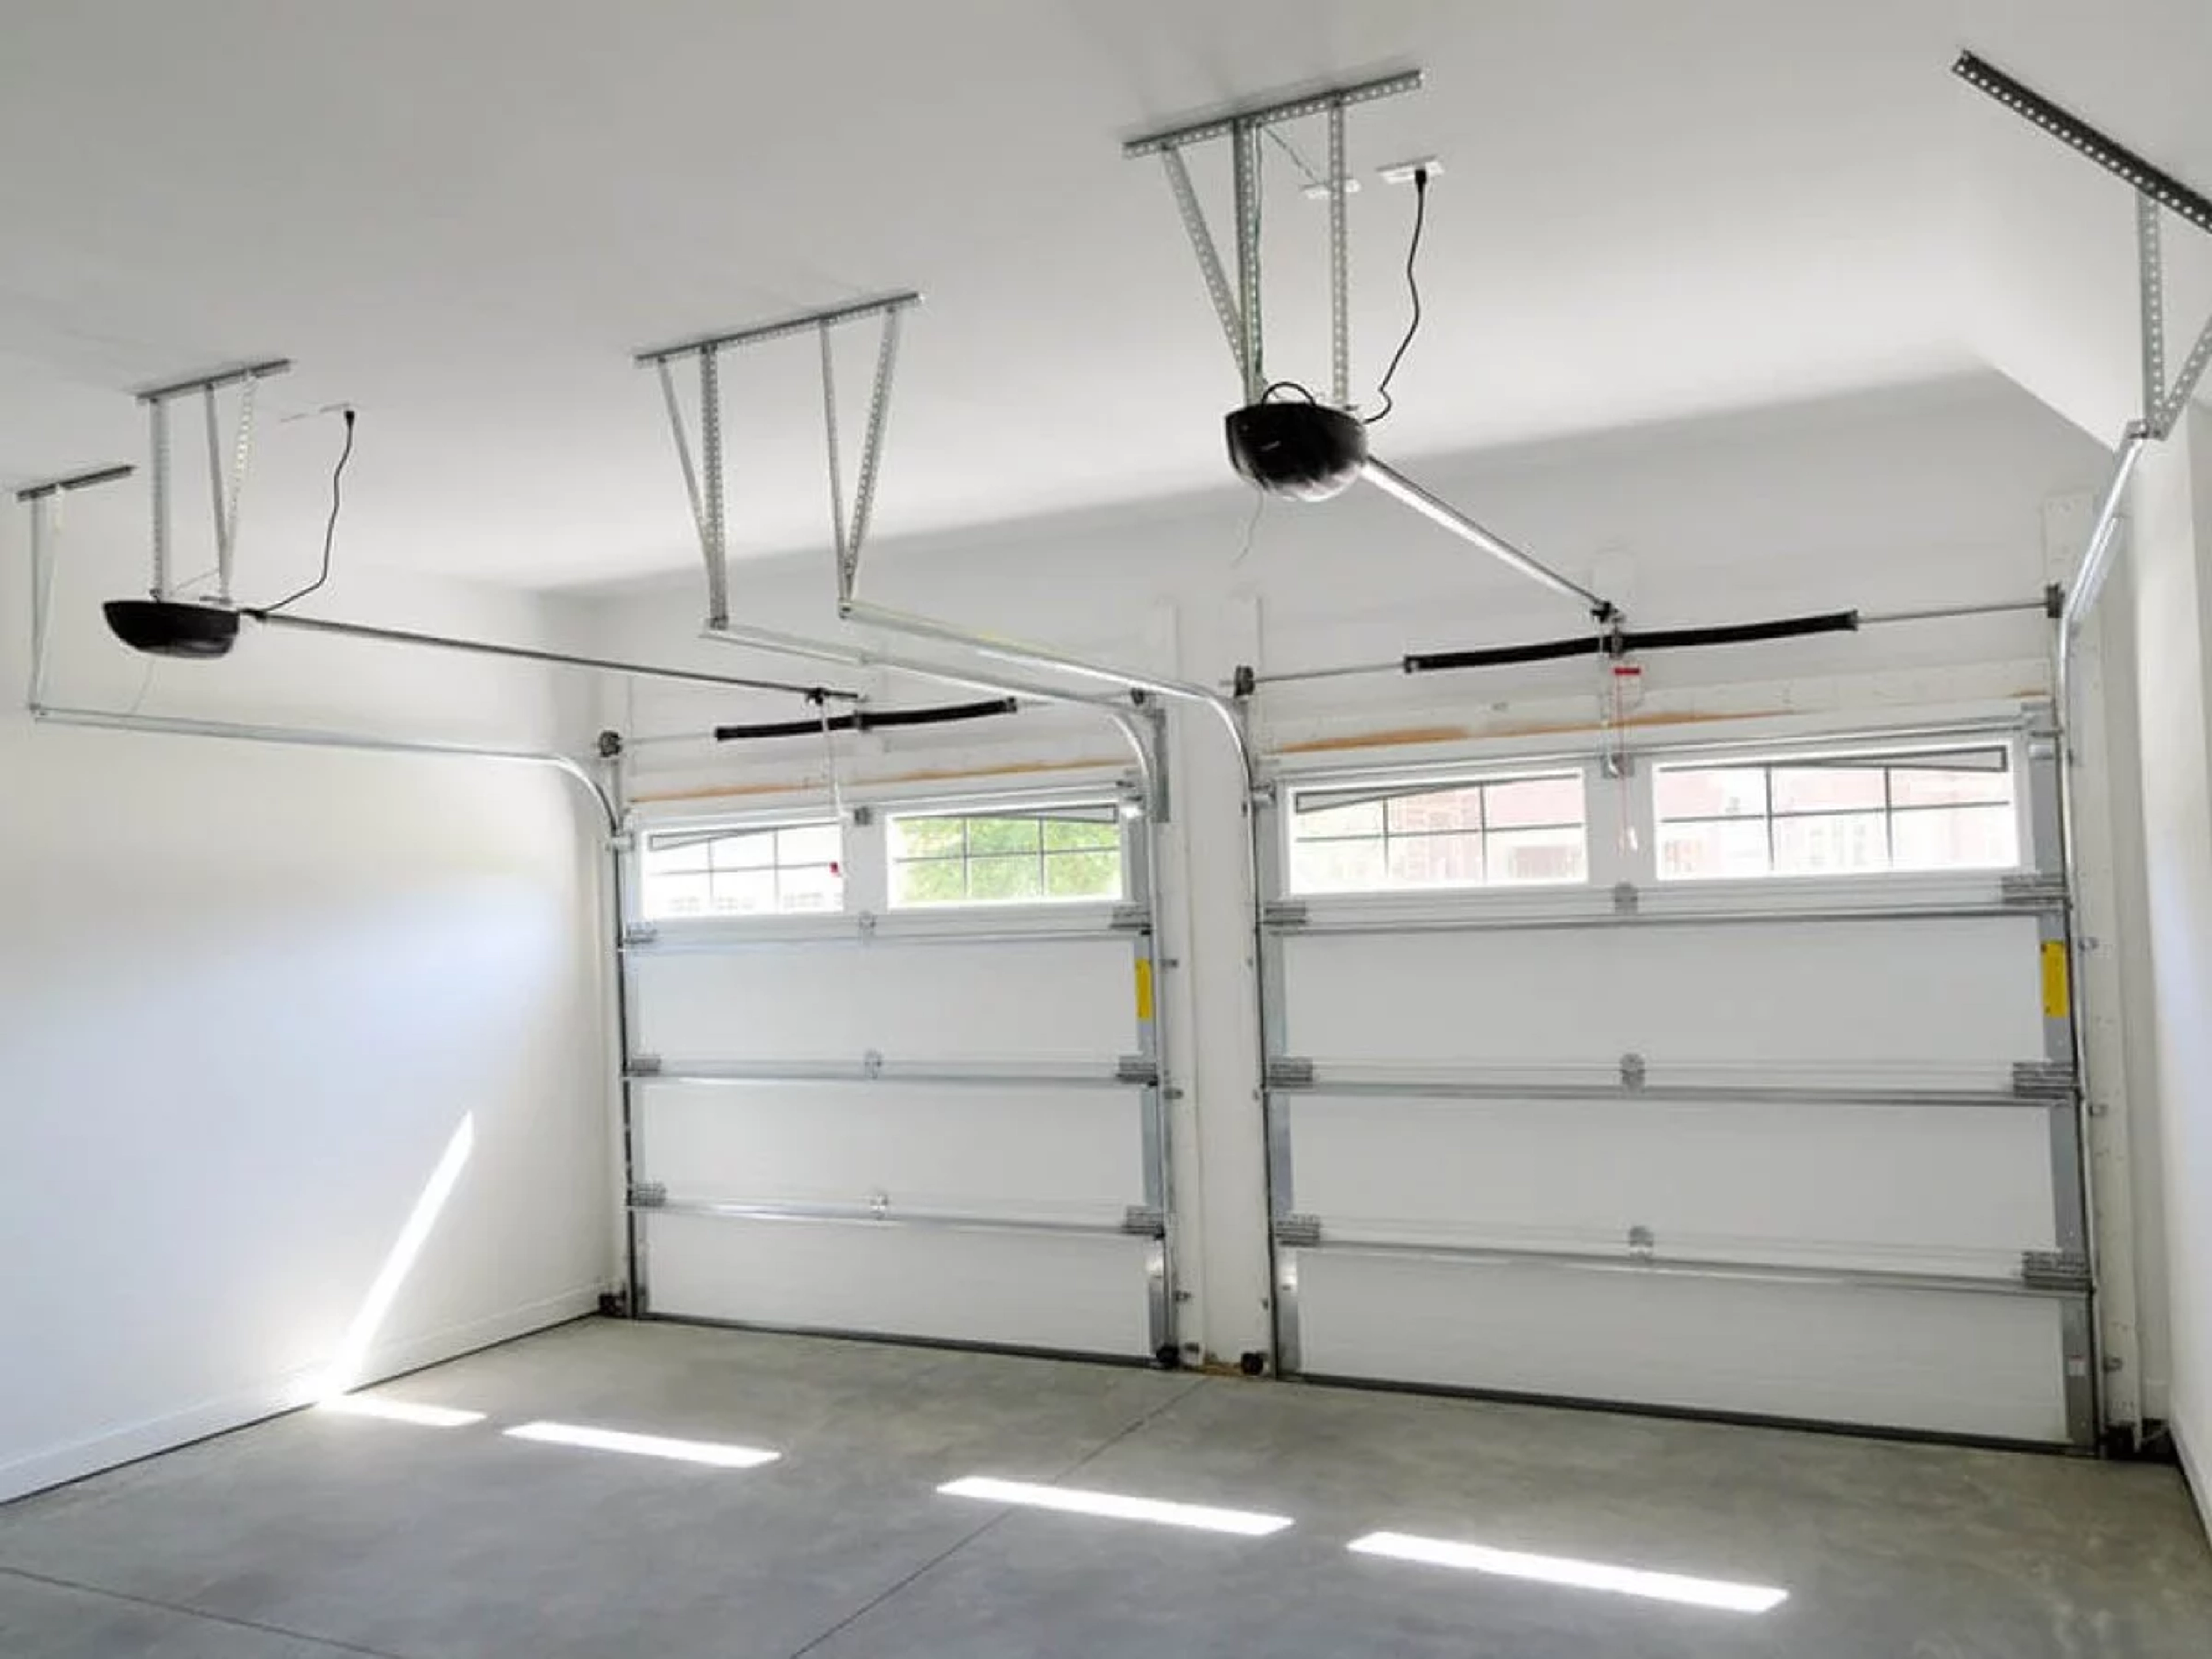 Coupure de courant - Comment rembrayer une porte de garage